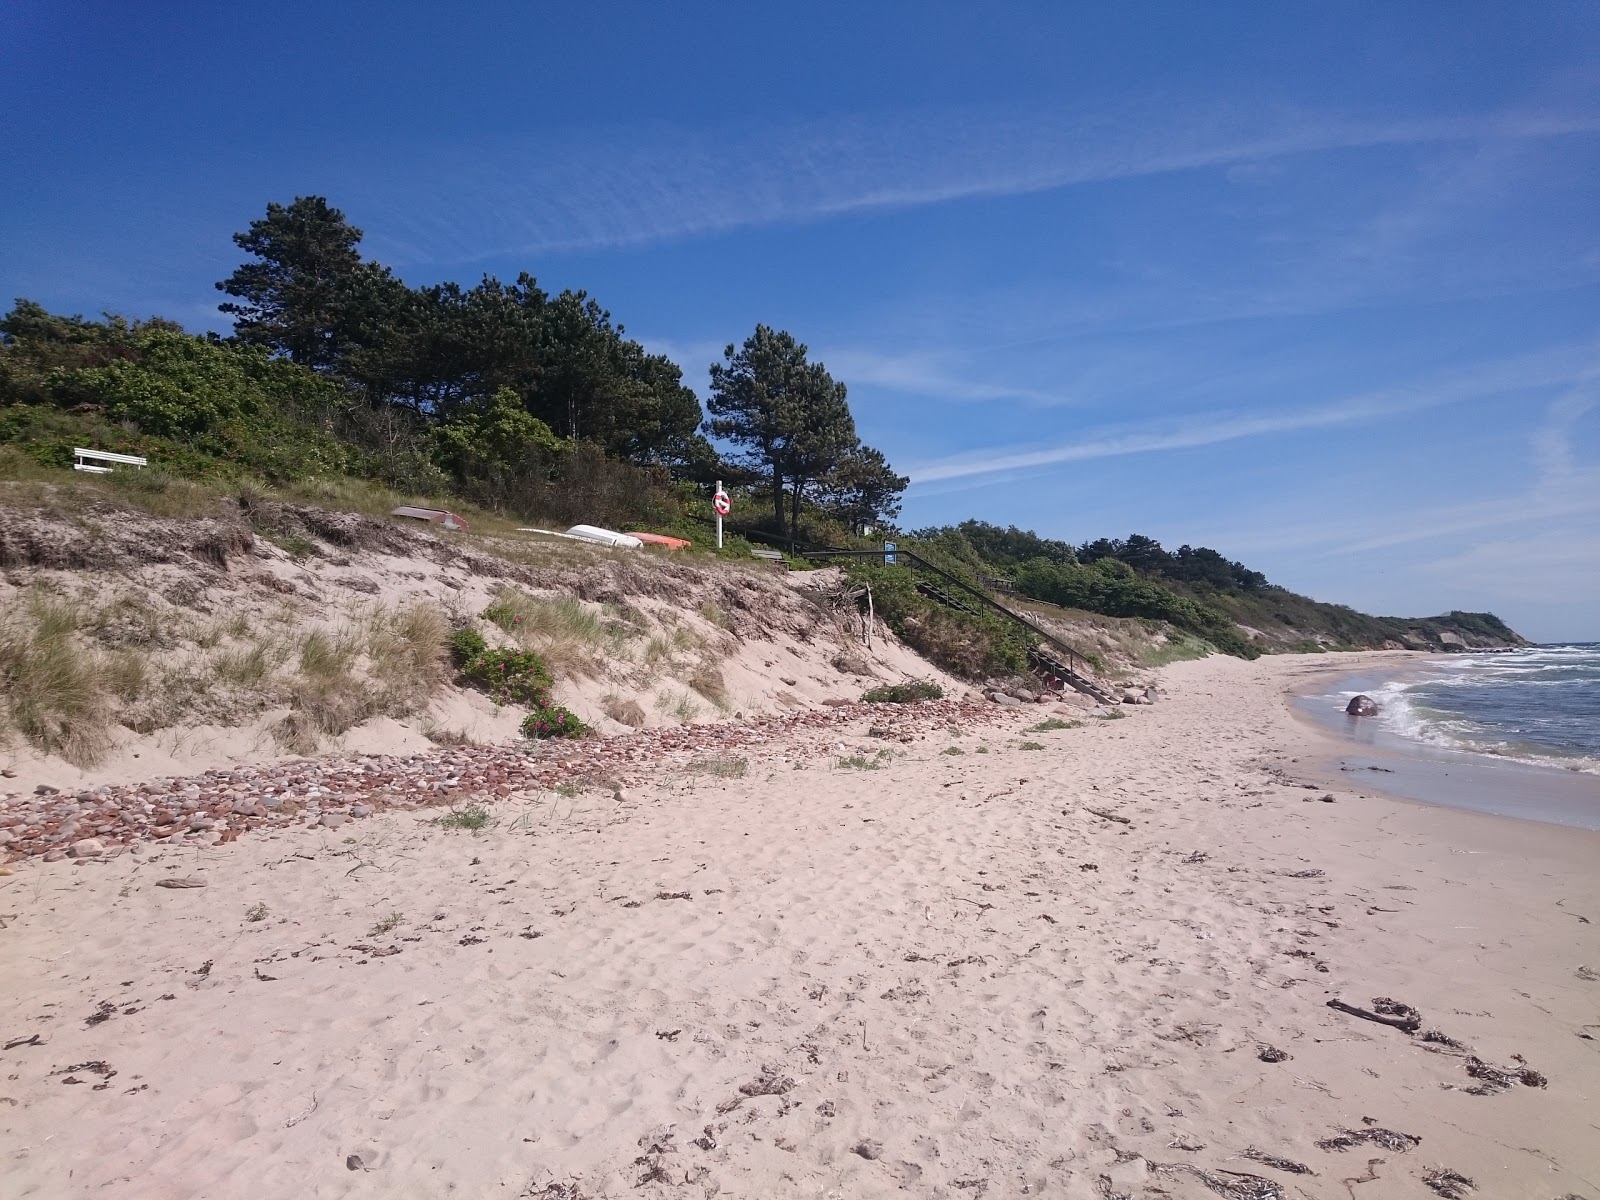 Fotografija Stampen Bornholm Beach nahaja se v naravnem okolju